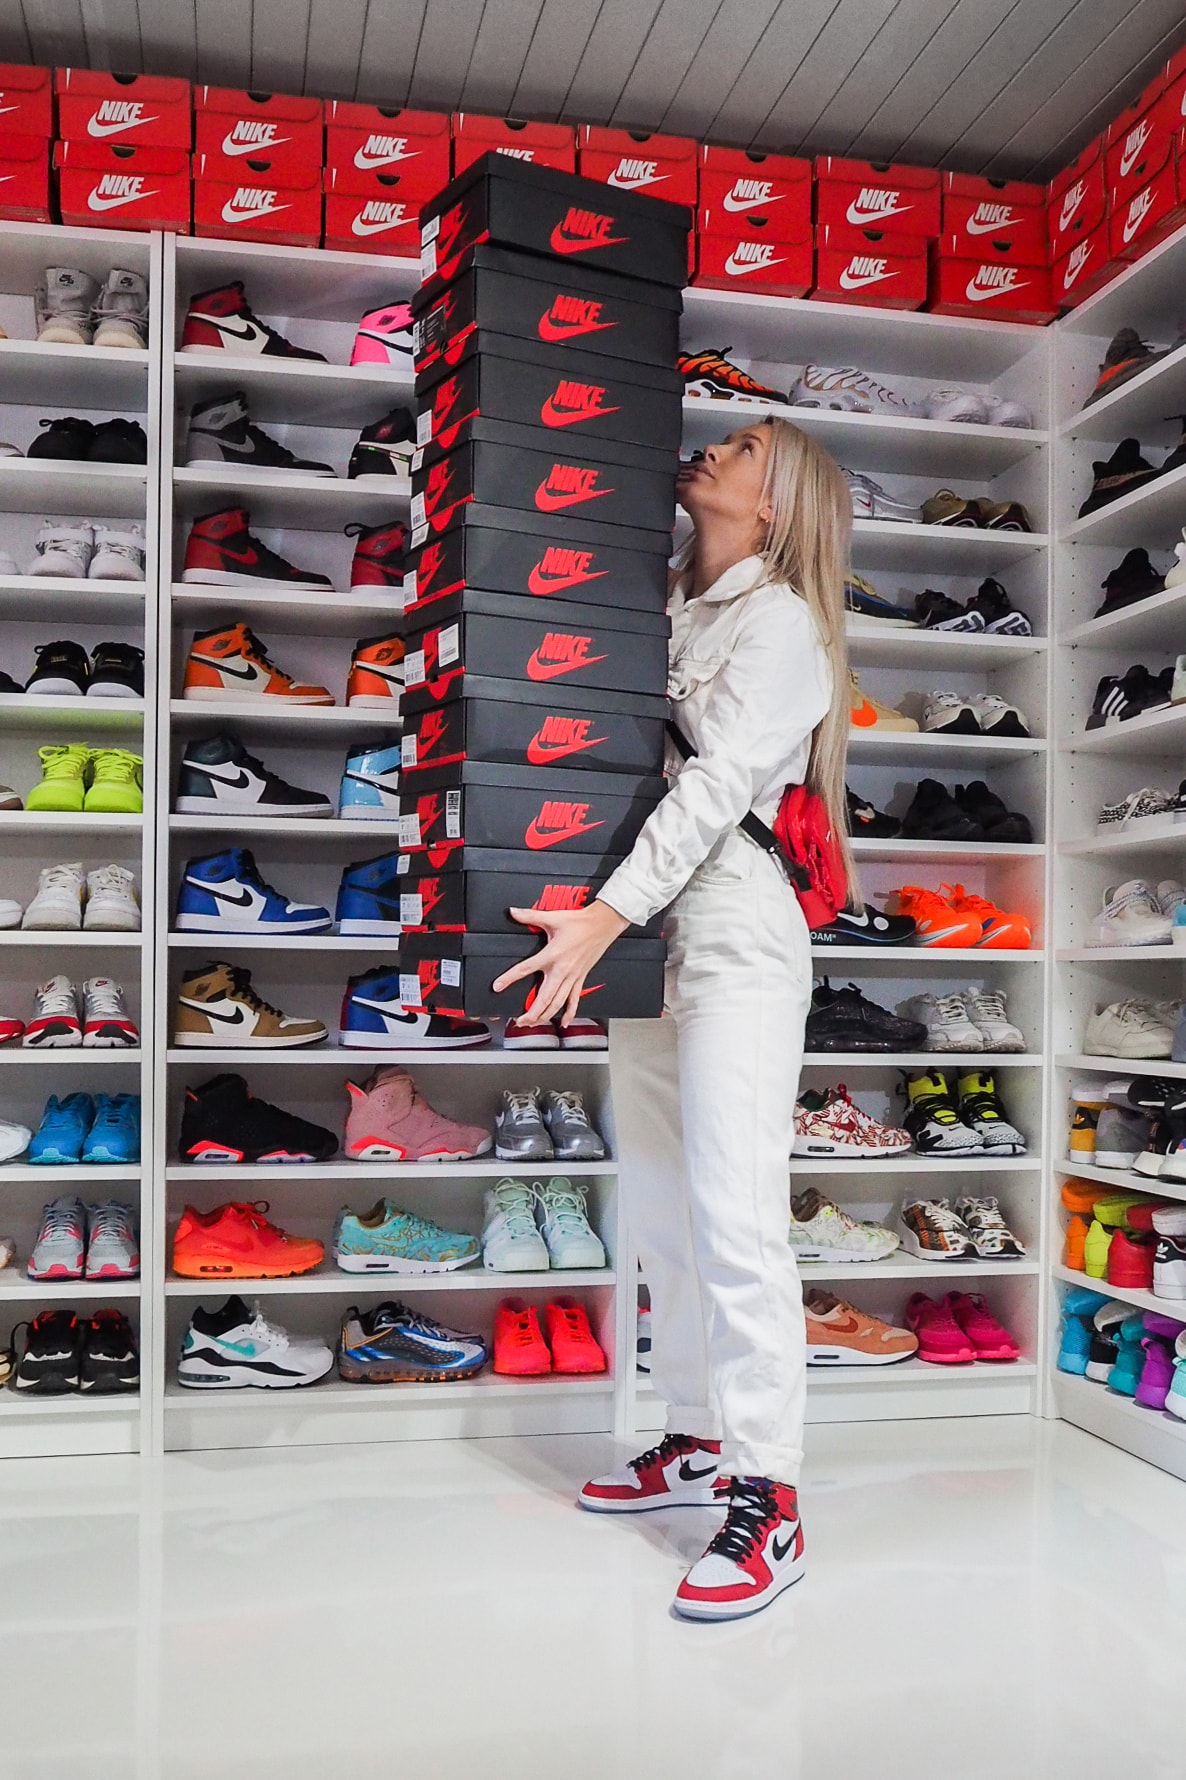 8 Retro Jordans Every Sneaker Collector Needs